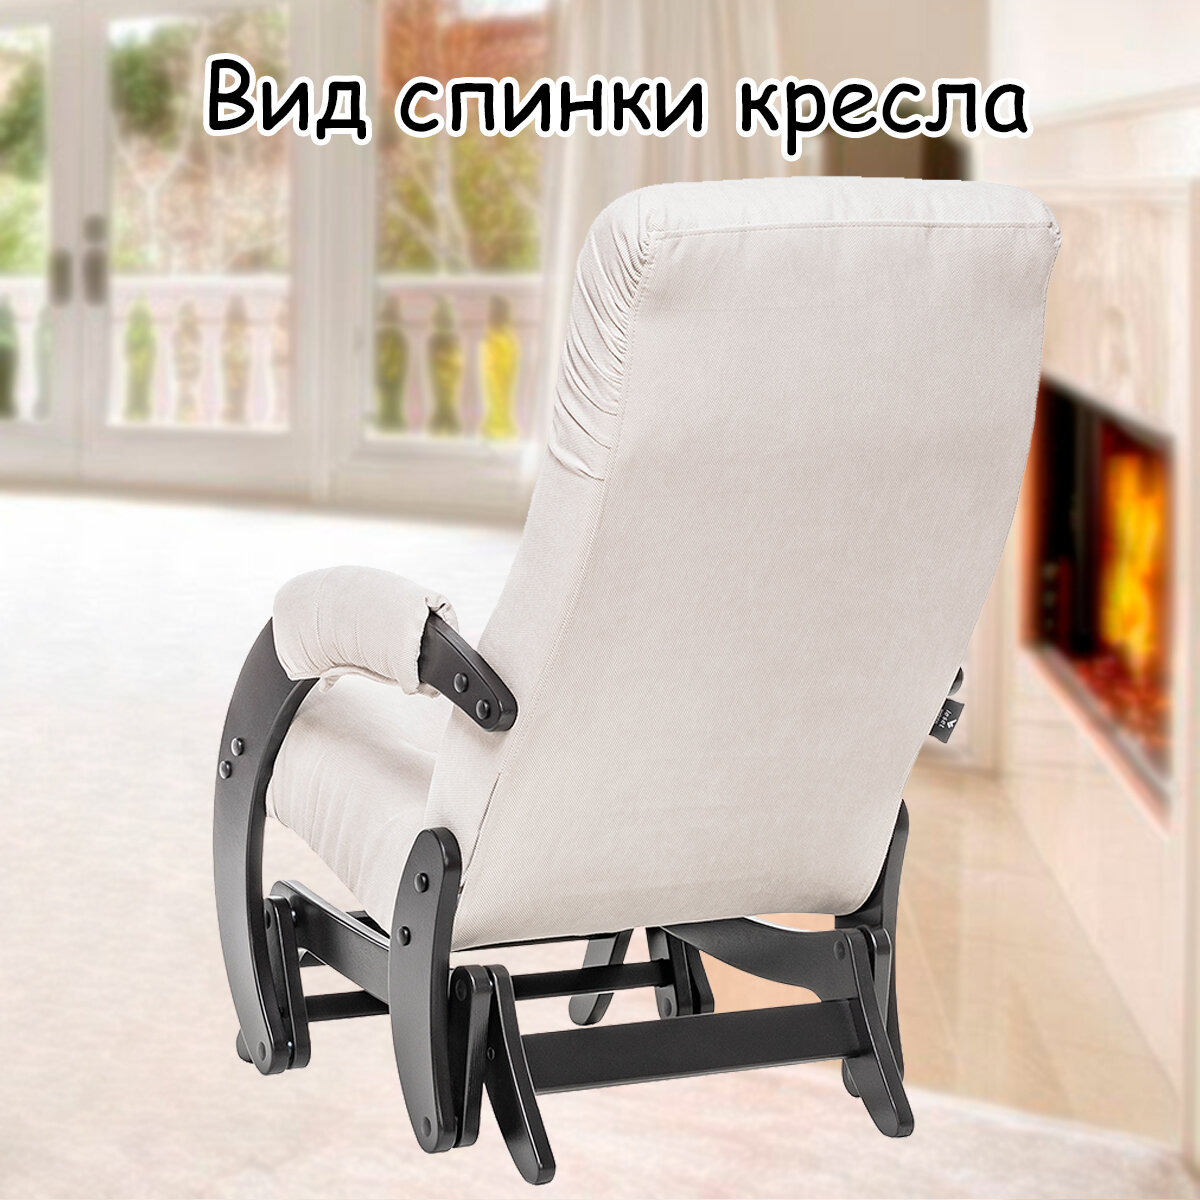 Кресло-качалка (глайдер) с маятниковым механизмом для взрослых 55х88х100 см, модель 68, verona, цвет: Light grey (светло-серый), каркас: Venge (черный) - фотография № 8